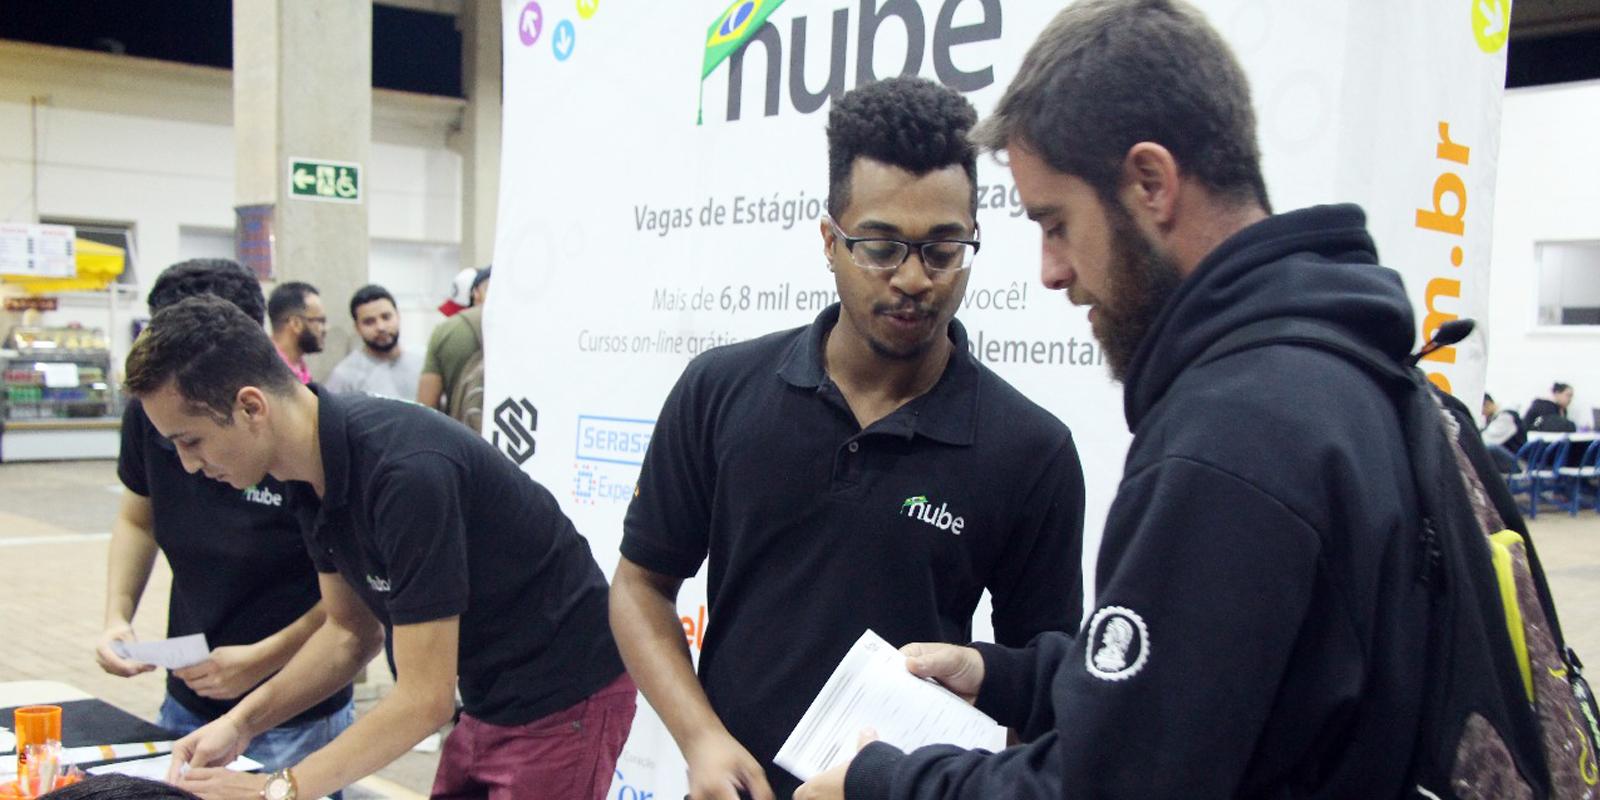 UNIFAAT em parceria com o Nube realiza ação de incentivo à empregabilidade